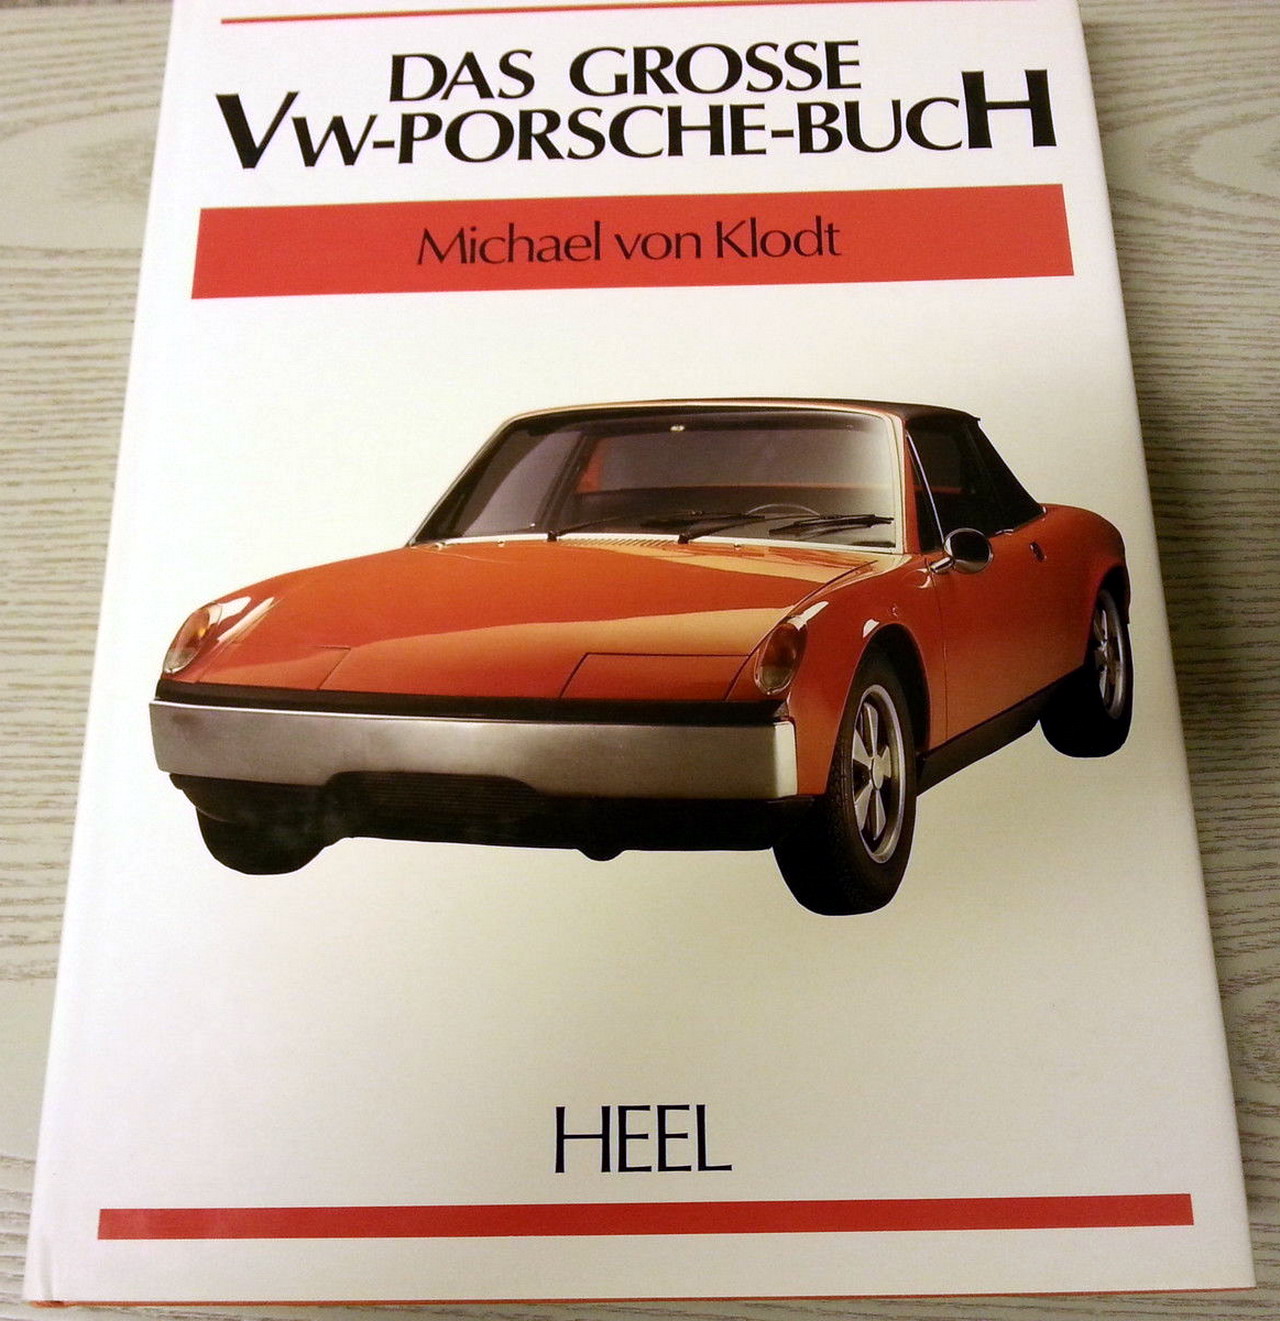 Das Grosse VW-Porsche-BucH HEEL 914-6 - Photo 1